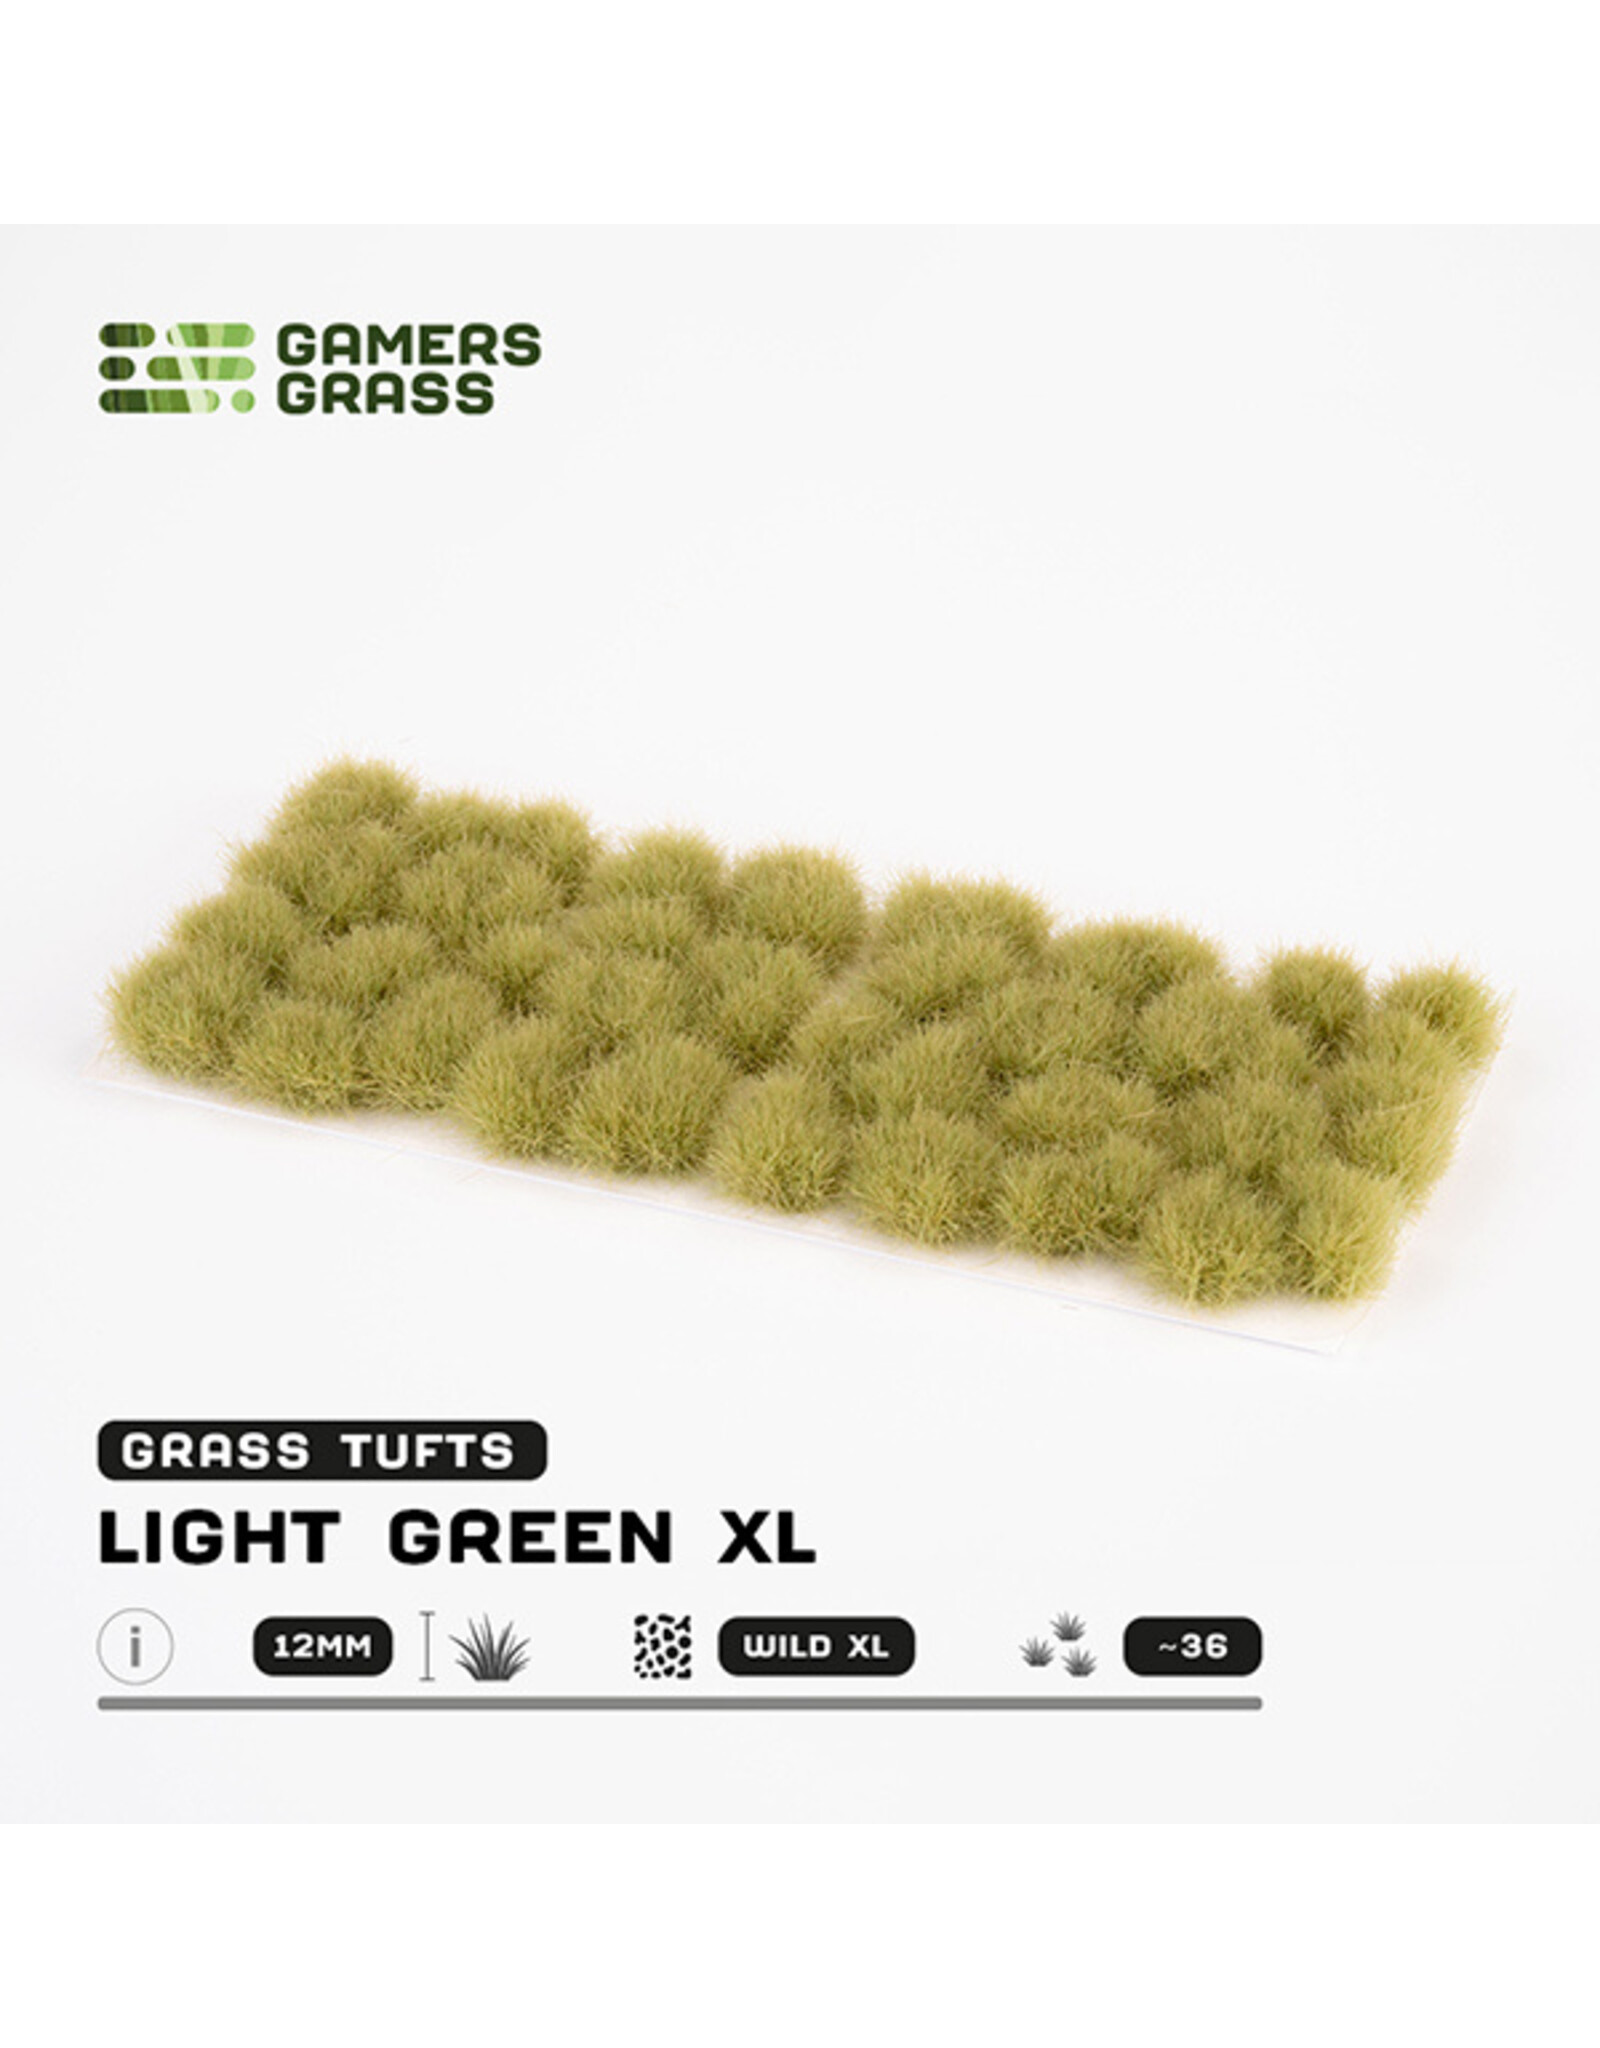 Gamers Grass Gamers Grass Tufts: Tufts- Light Green XL 12mm- Wild XL